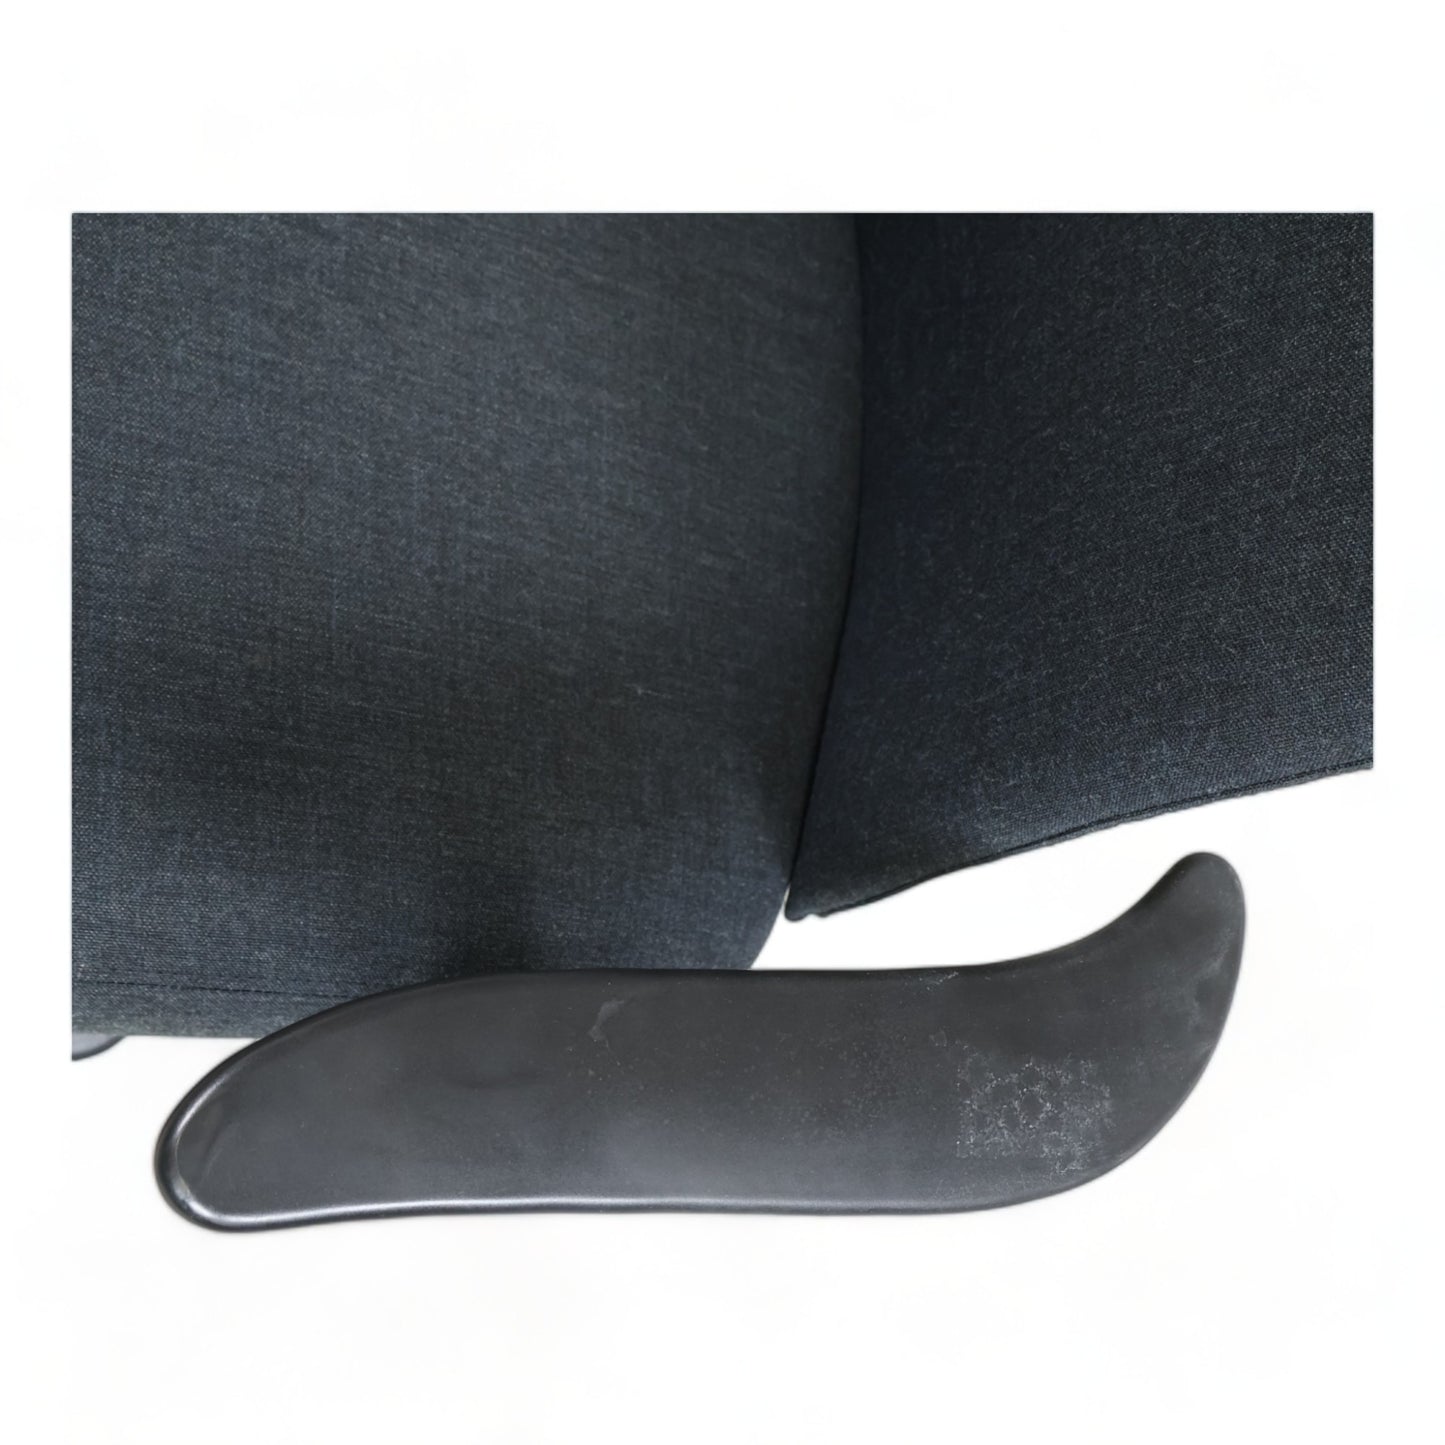 Nyrenset | Grå Håg H05 5300 kontorstol med swingback armlener